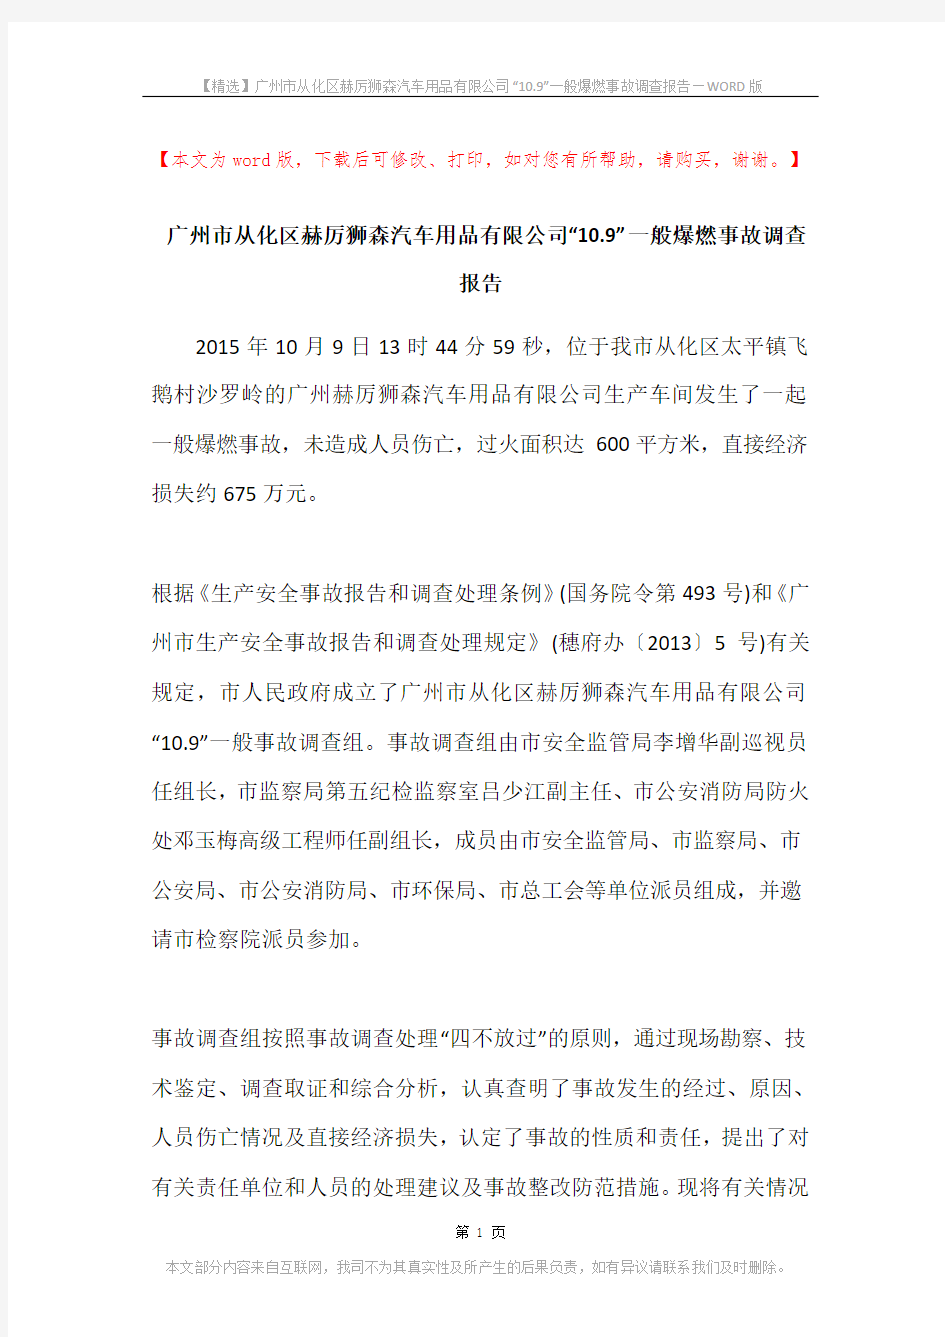 广州市从化区赫厉狮森汽车用品有限公司“10.9”一般爆燃事故调查报告